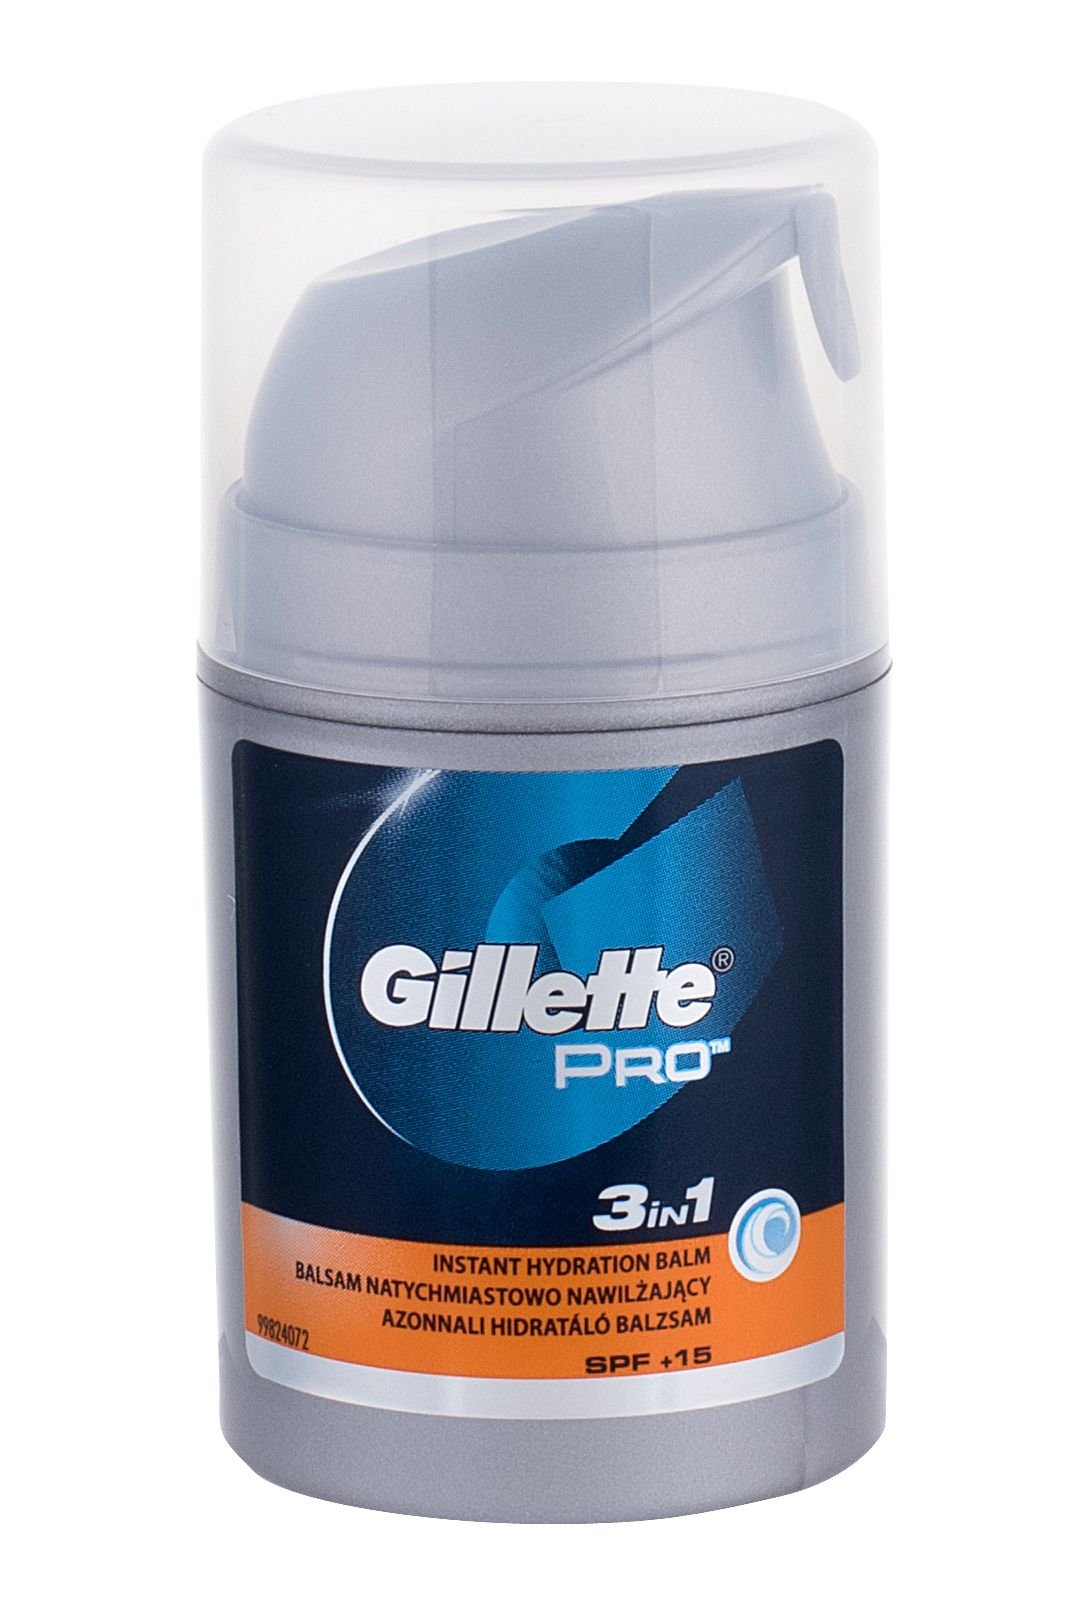 Gillette Pro 3in1 balzamas po skutimosi